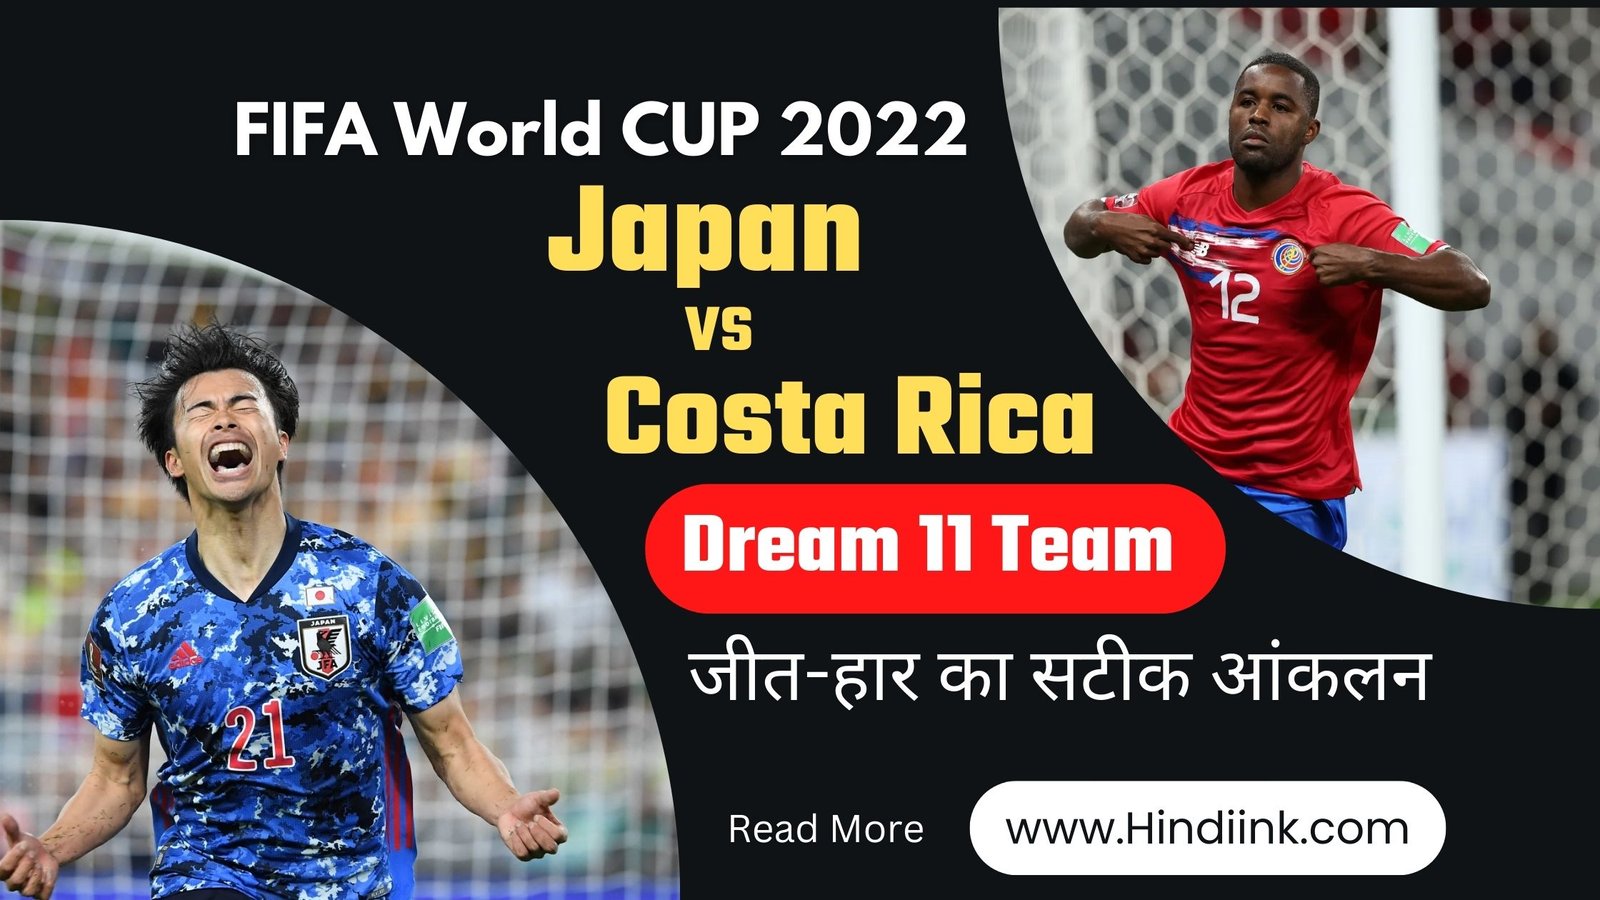 FIFA World 2022। Japan vs Costa Rica Match Prediction in Hindi। Dream 11 Team